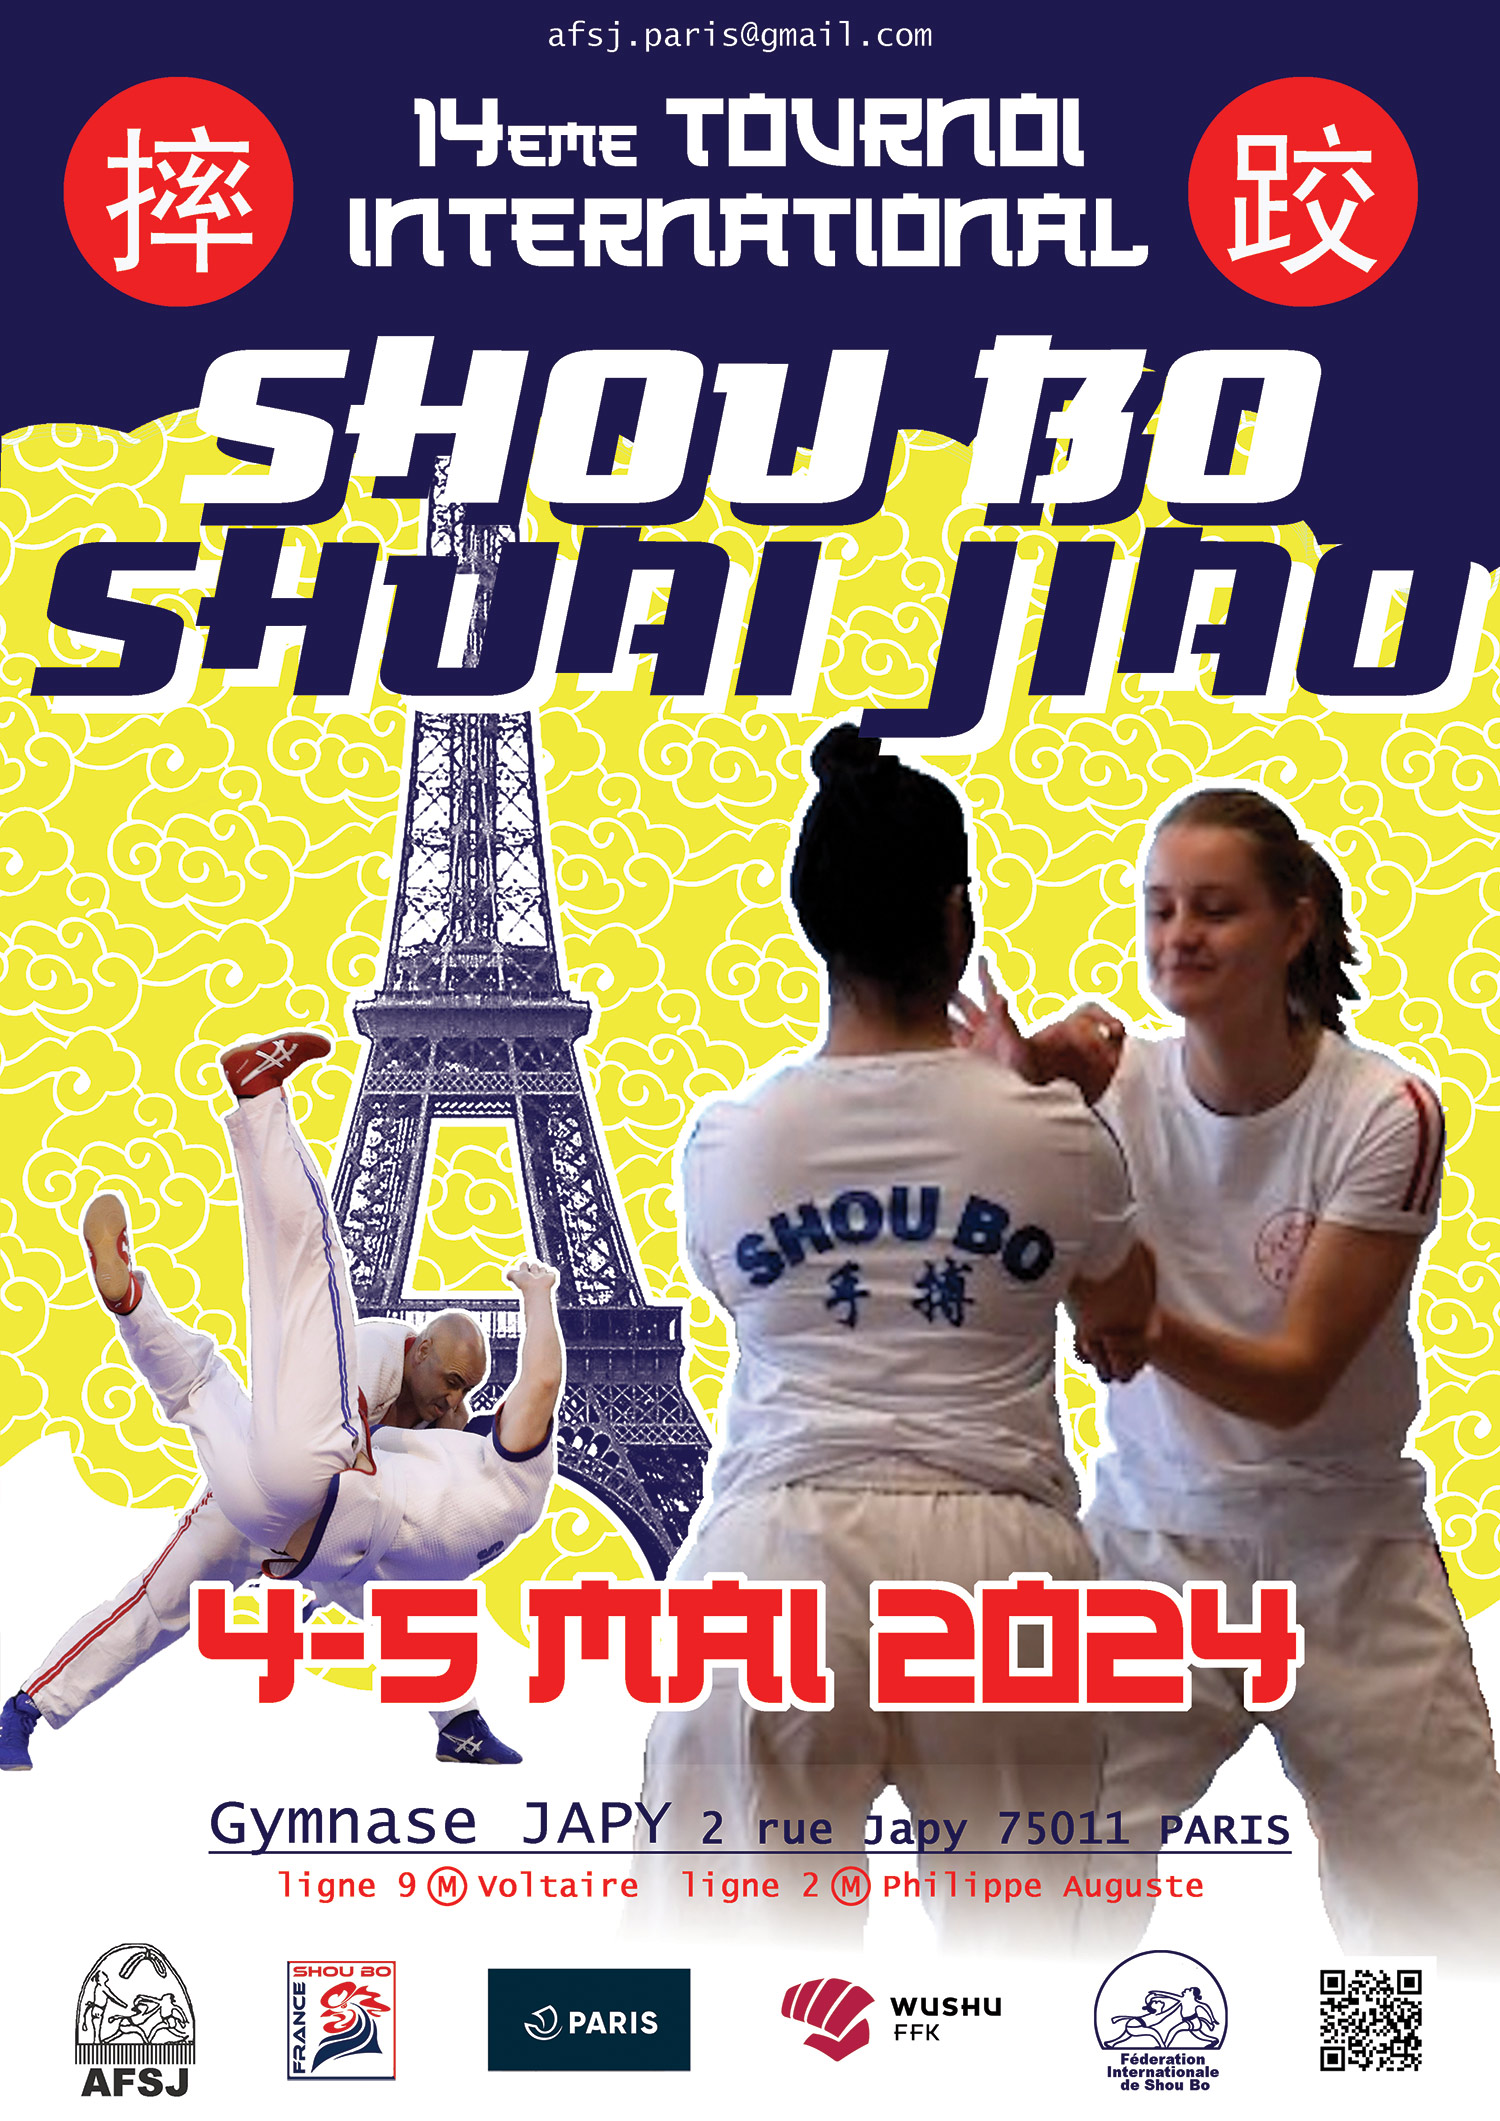 14ème Tournoi International de SHOU BO 